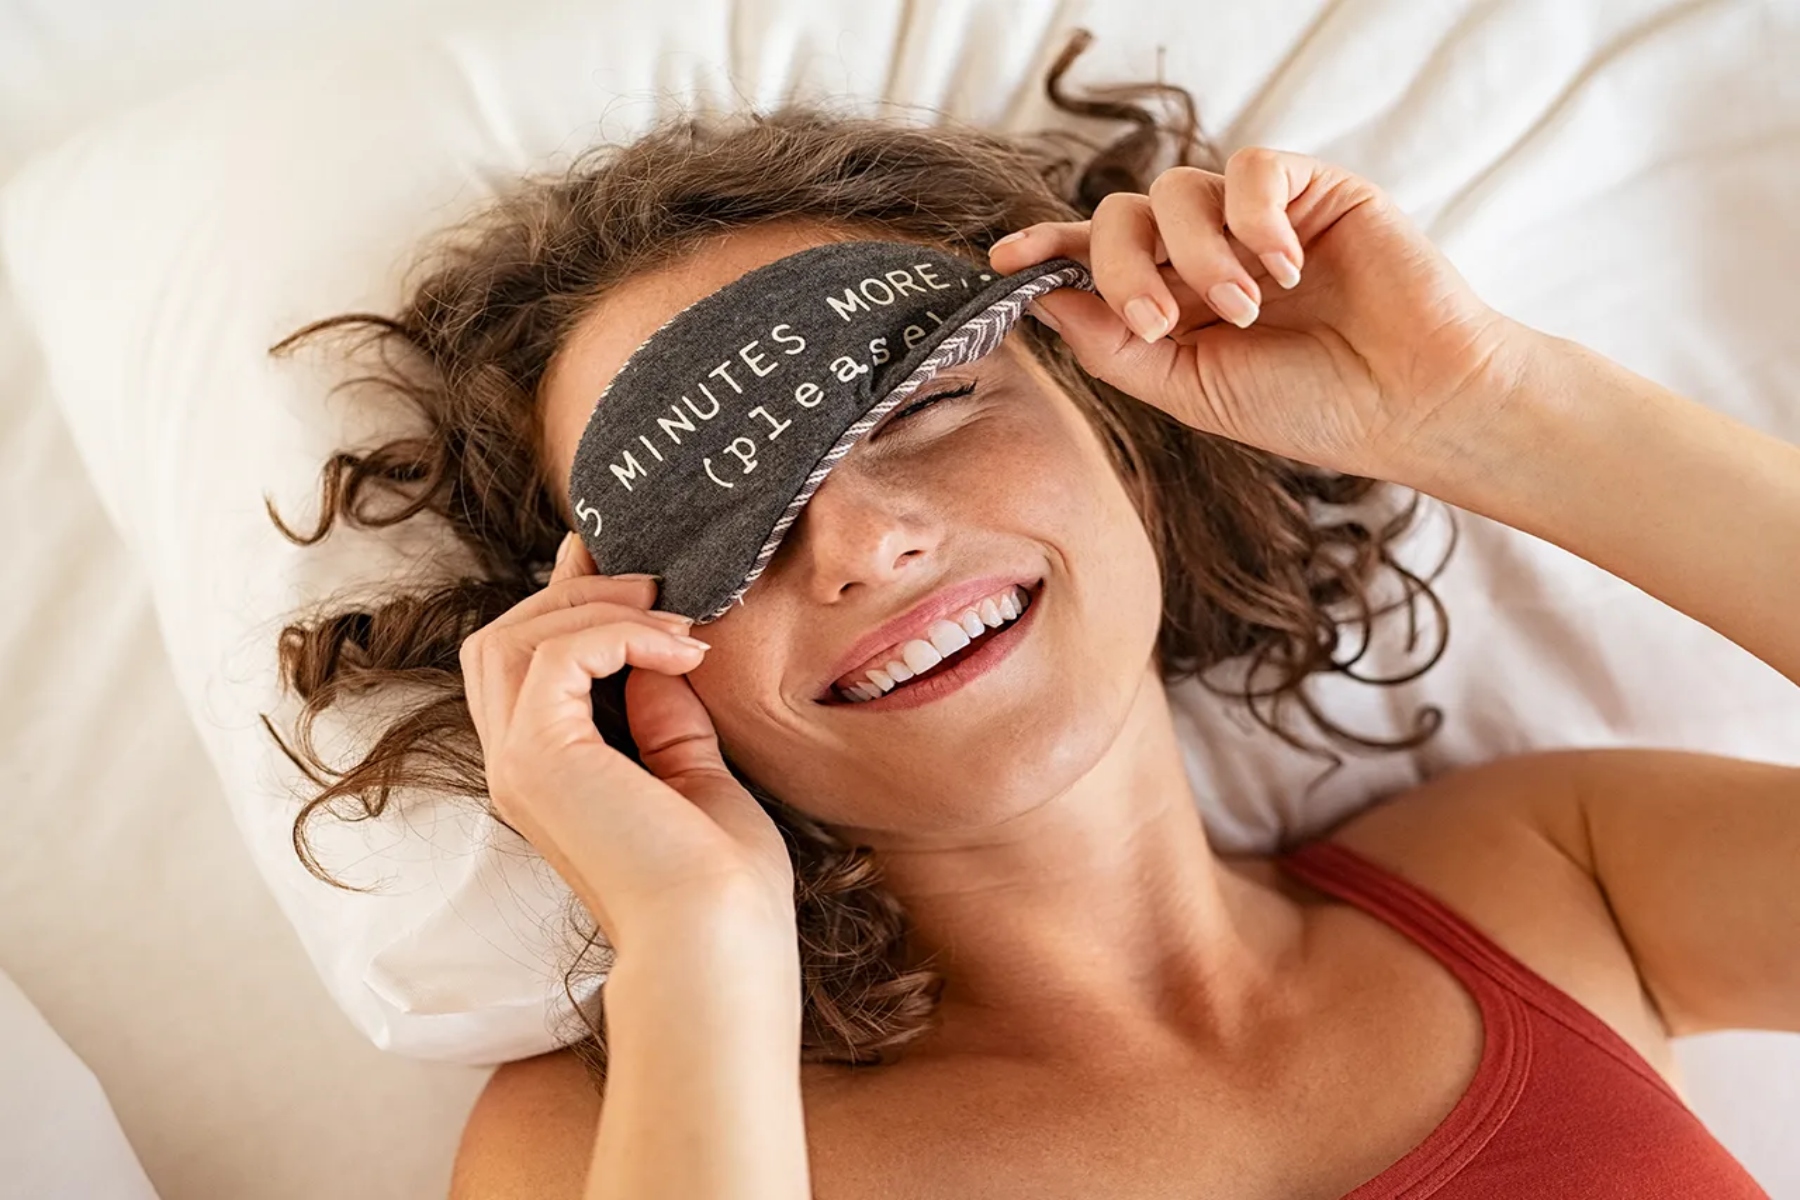 Μάσκες ύπνου: 7 λόγοι για να τις εντάξετε στη ρουτίνα του ύπνου σας